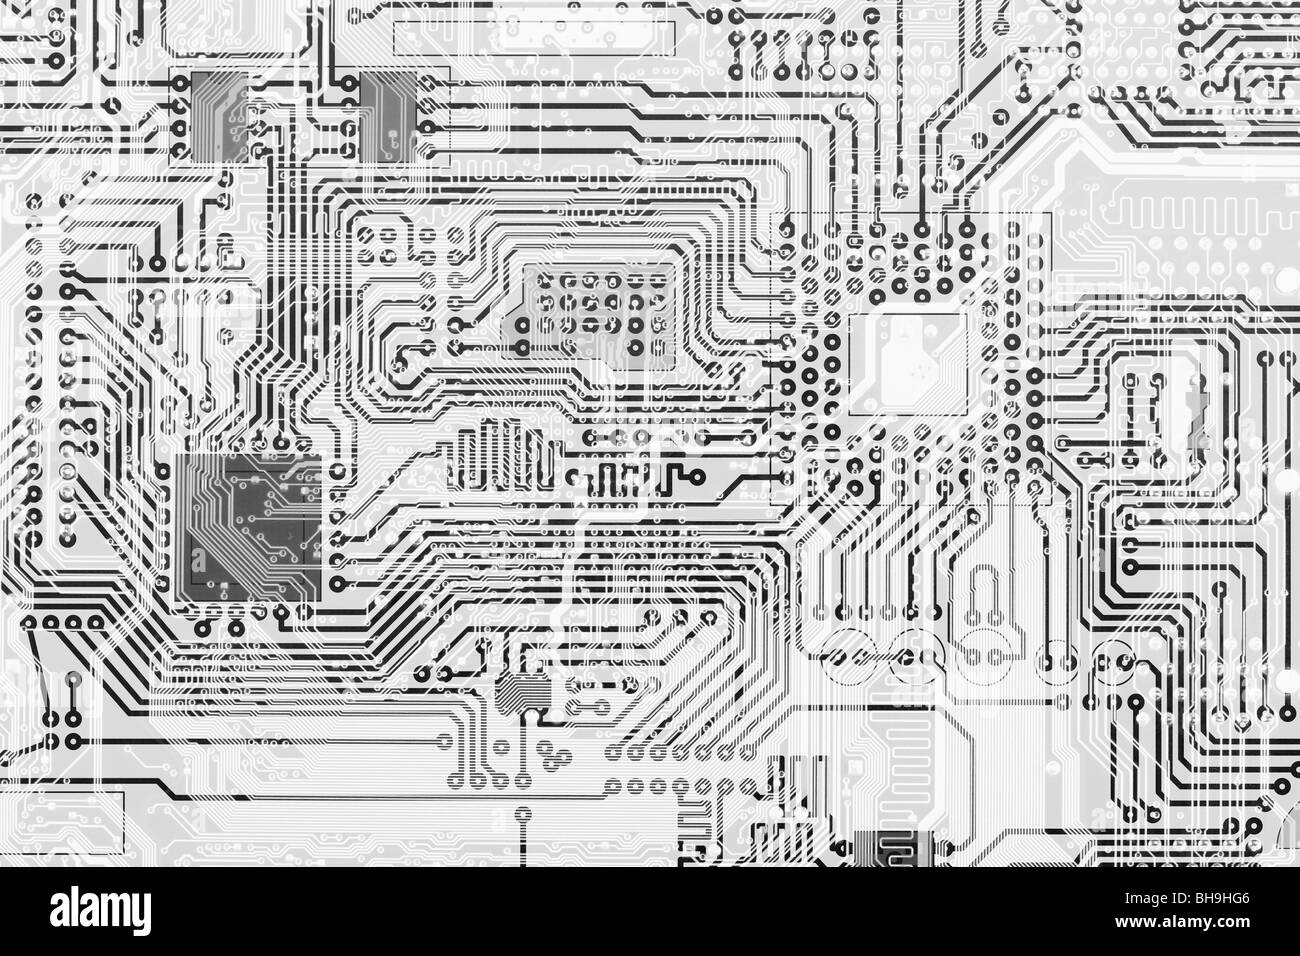 Platine industriellen elektronischen monochrome grafischen Hintergrund Stockfoto